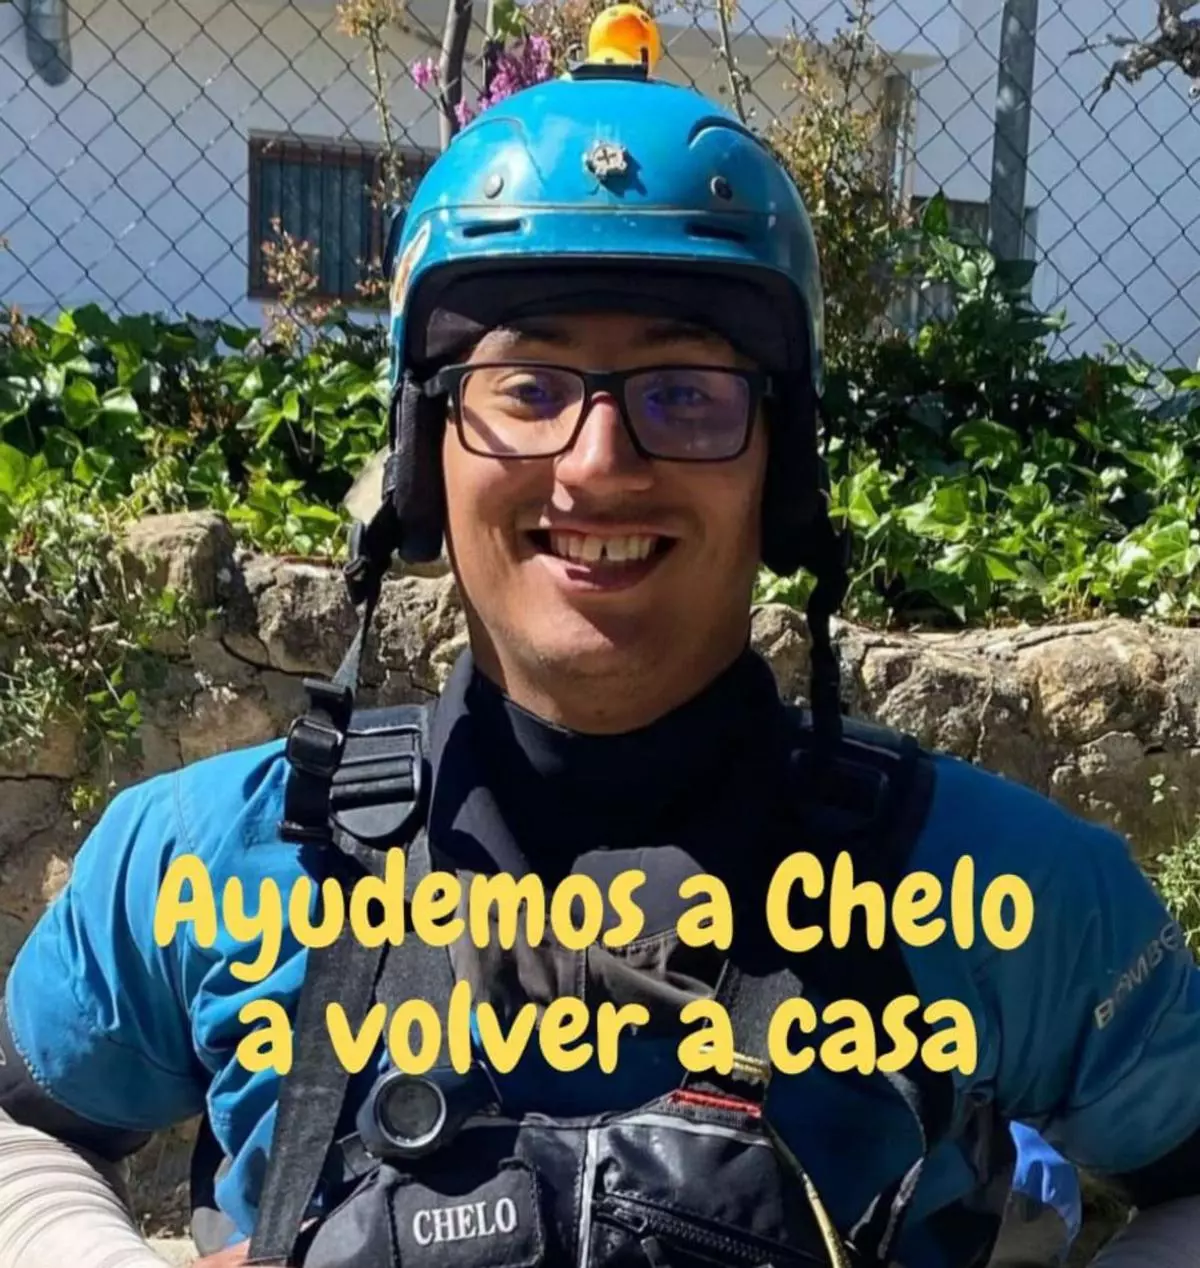 Murillo de Gállego recauda fondos para repatriar a ‘Chelo’, el guía chileno de rafting que murió ahogado en Torla